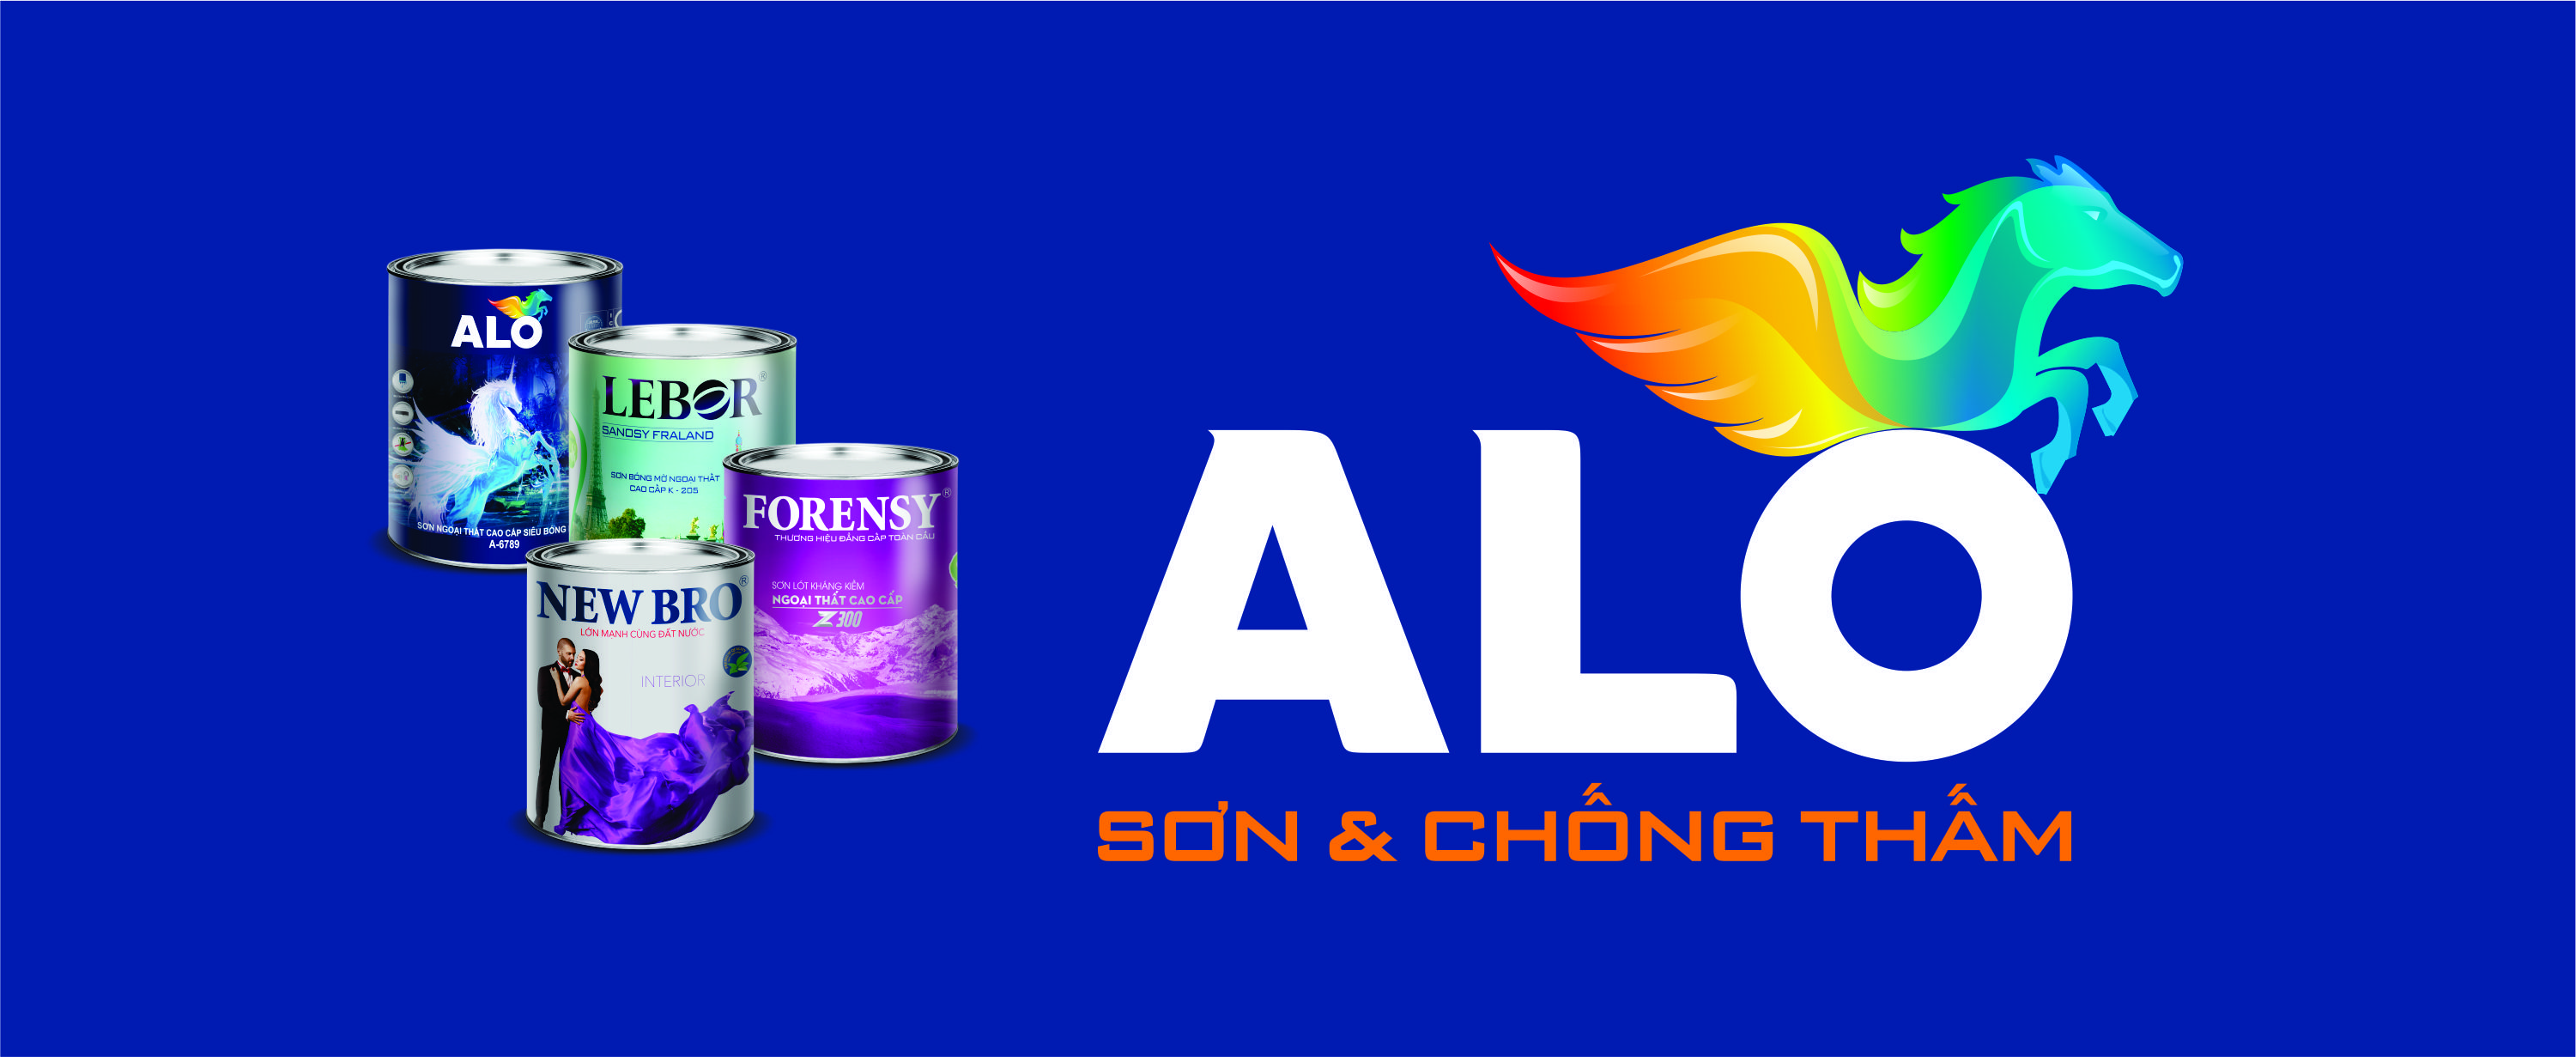 Tập đoàn Alo Việt Nam với nhiều năm kinh nghiệm trong lĩnh vực sản xuất sơn, đảm bảo mang đến cho khách hàng những dòng sản phẩm chất lượng và uy tín nhất hiện nay.